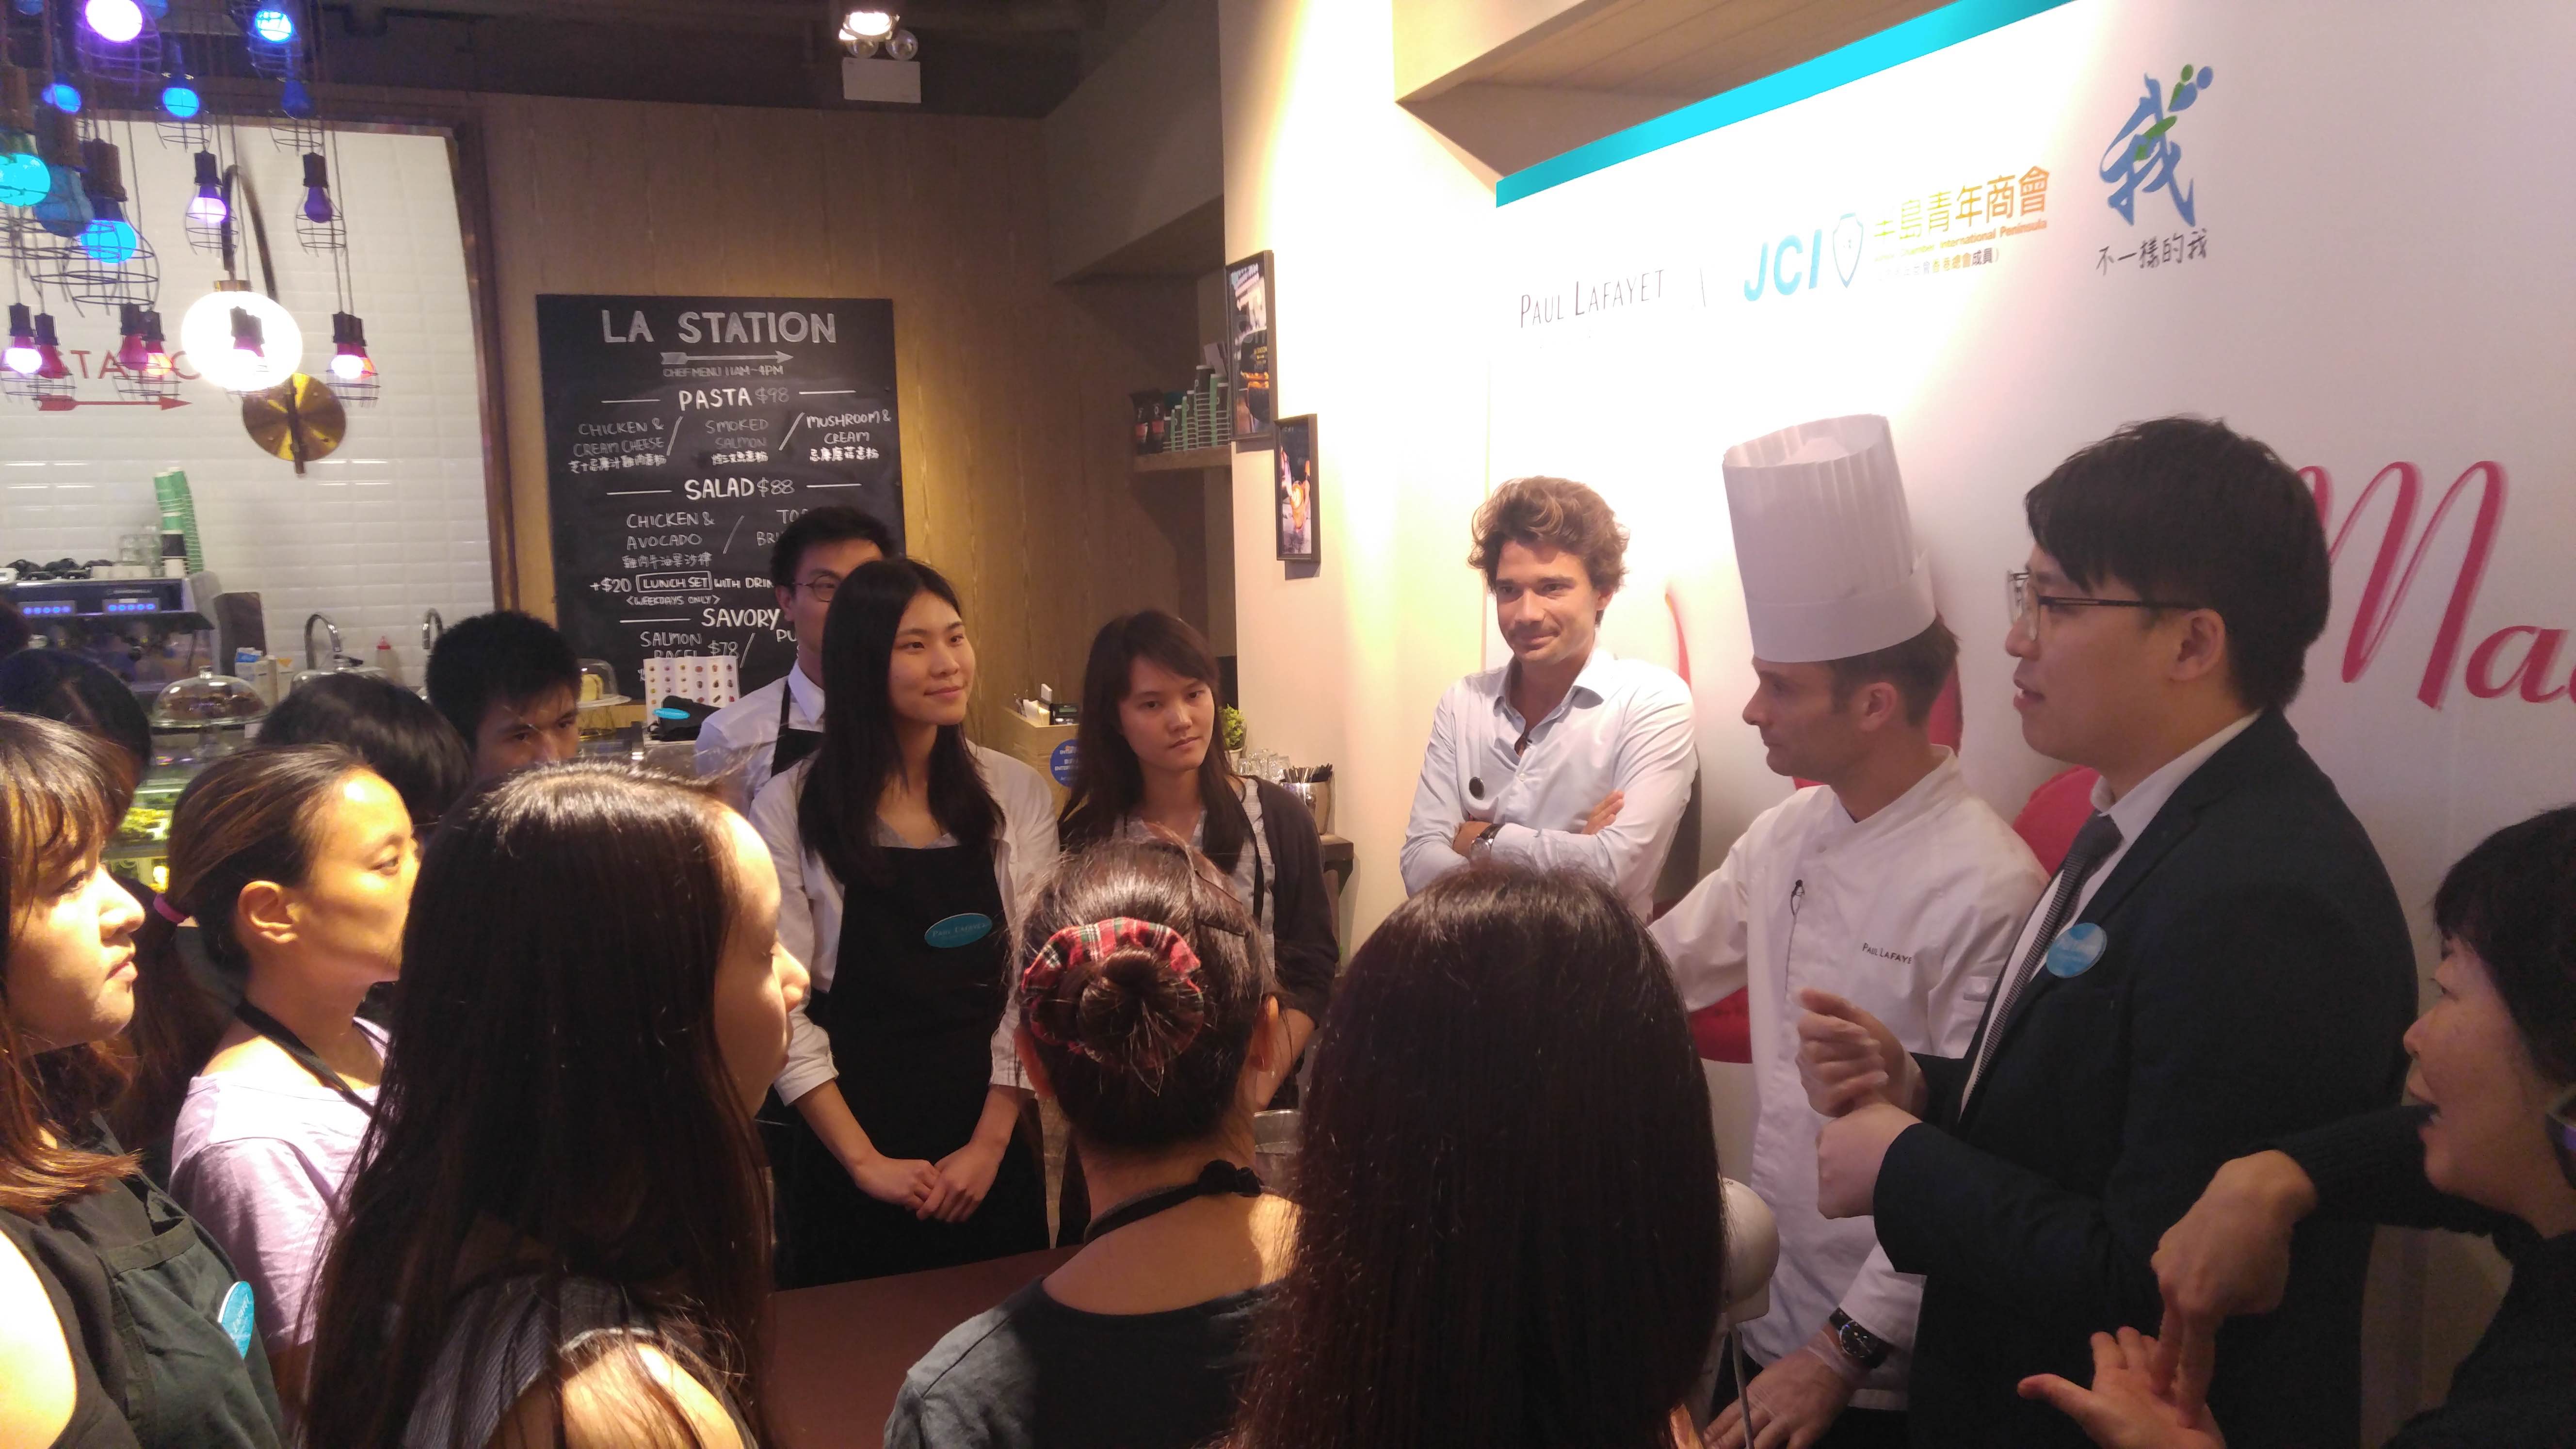 有幸得到法式甜品店 Paul Lafayet 贊助馬卡龍工作坊讓學員都有不一樣的體驗